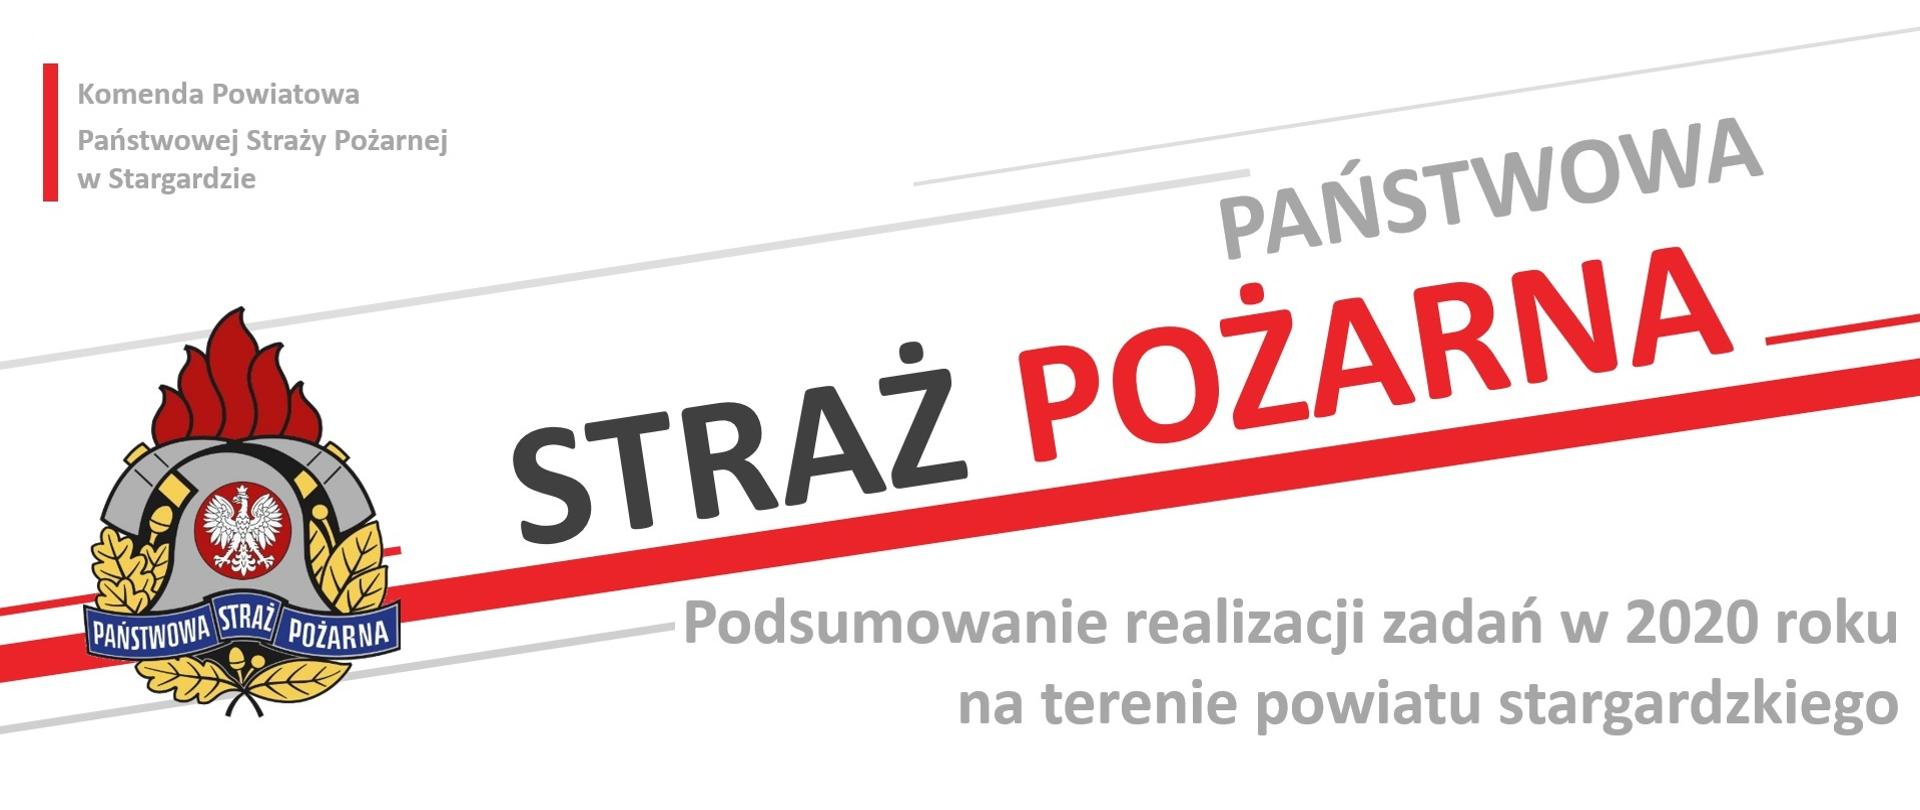 Plansza z napisem - Podsumowanie realizacji zadań w 2020 roku na terenie powiatu stargardzkiego